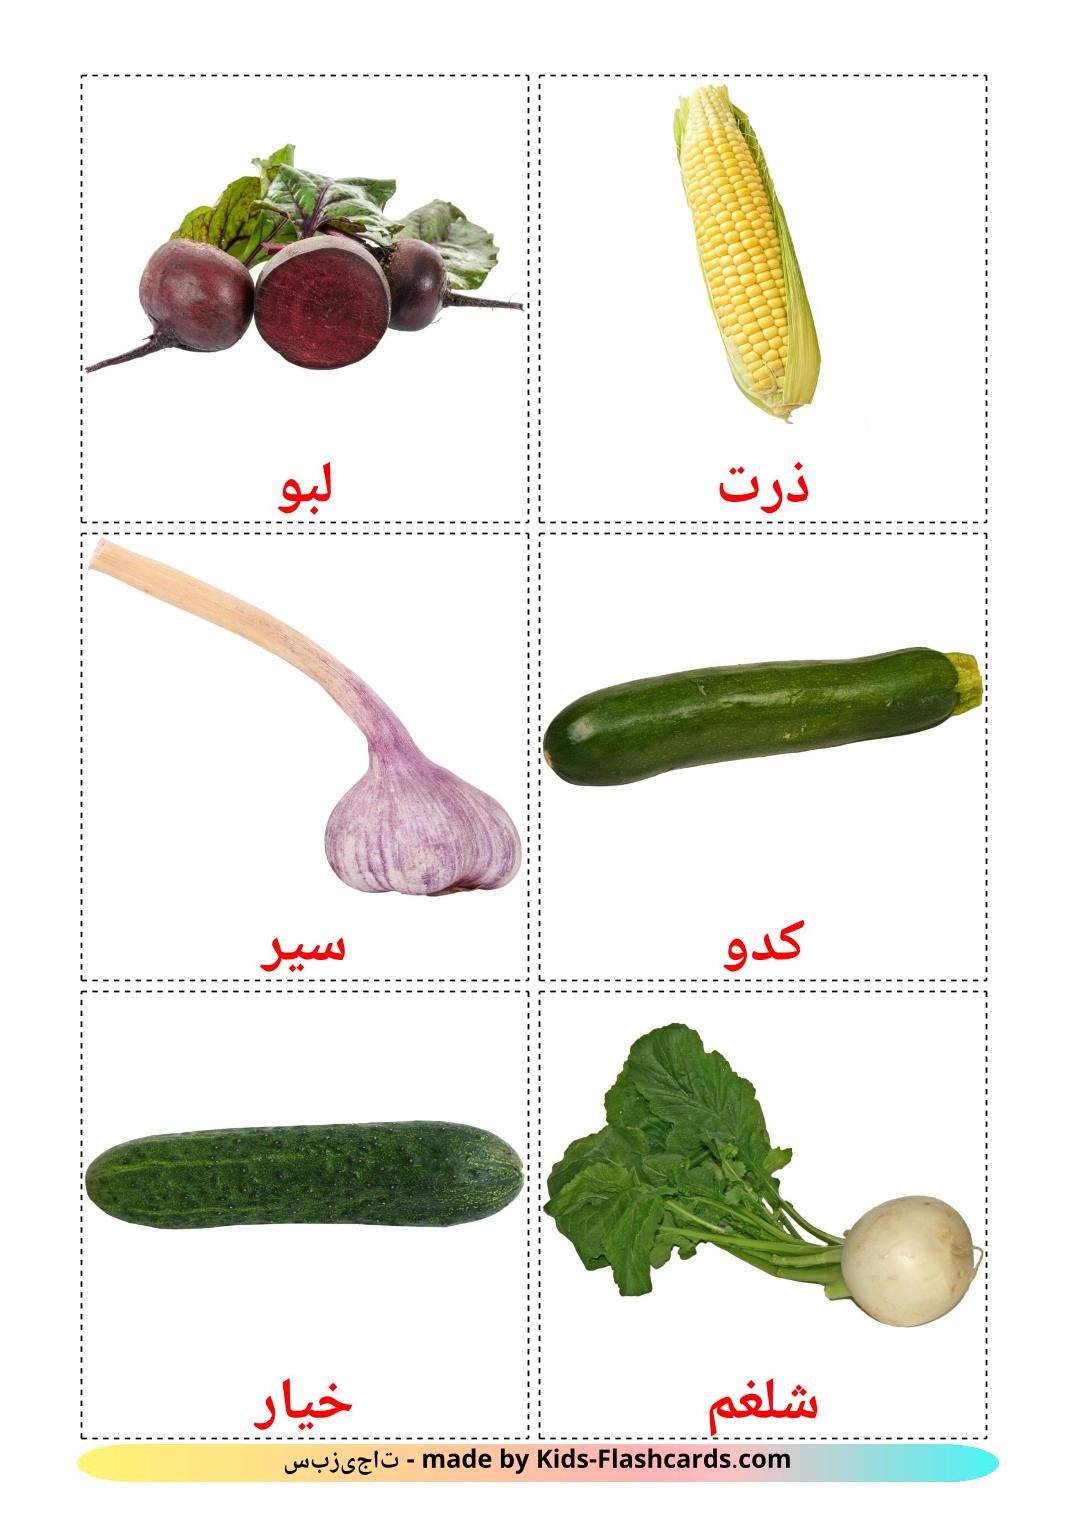 Legumes - 29 Flashcards persaes gratuitos para impressão